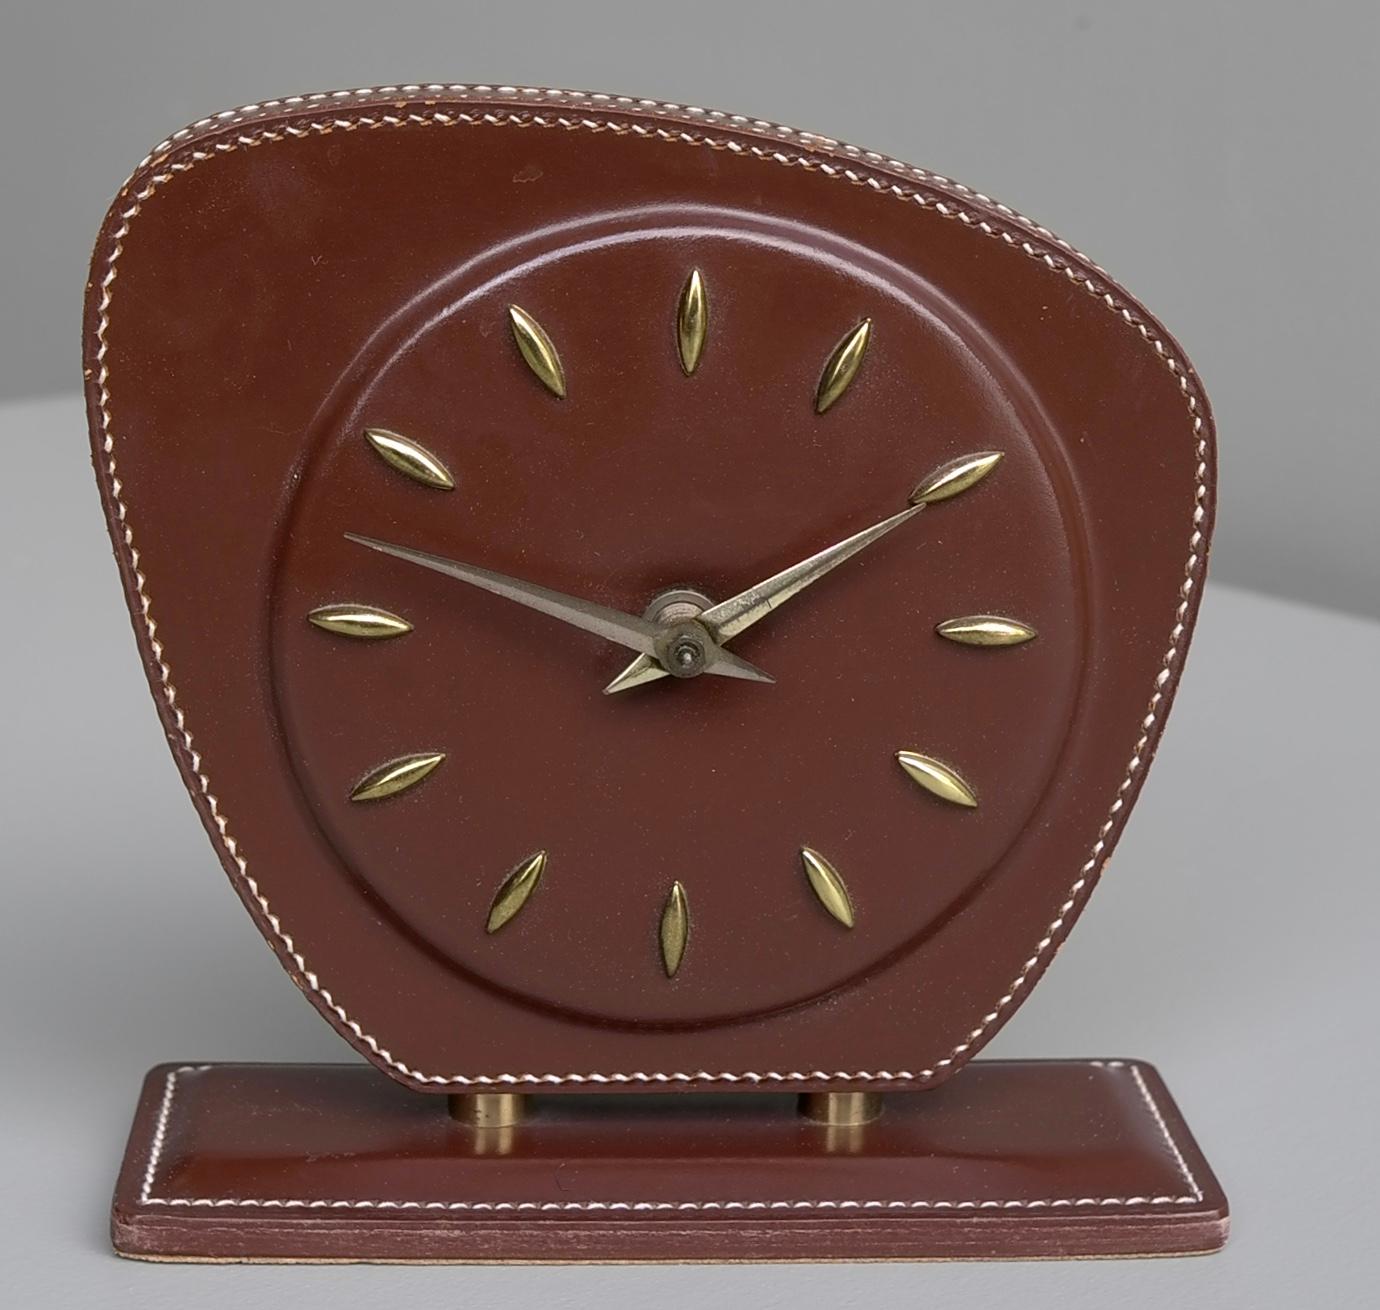 Französische handgenähte Uhr aus braunem Leder, Jacques Adnet zugeschrieben, 1950er Jahre.